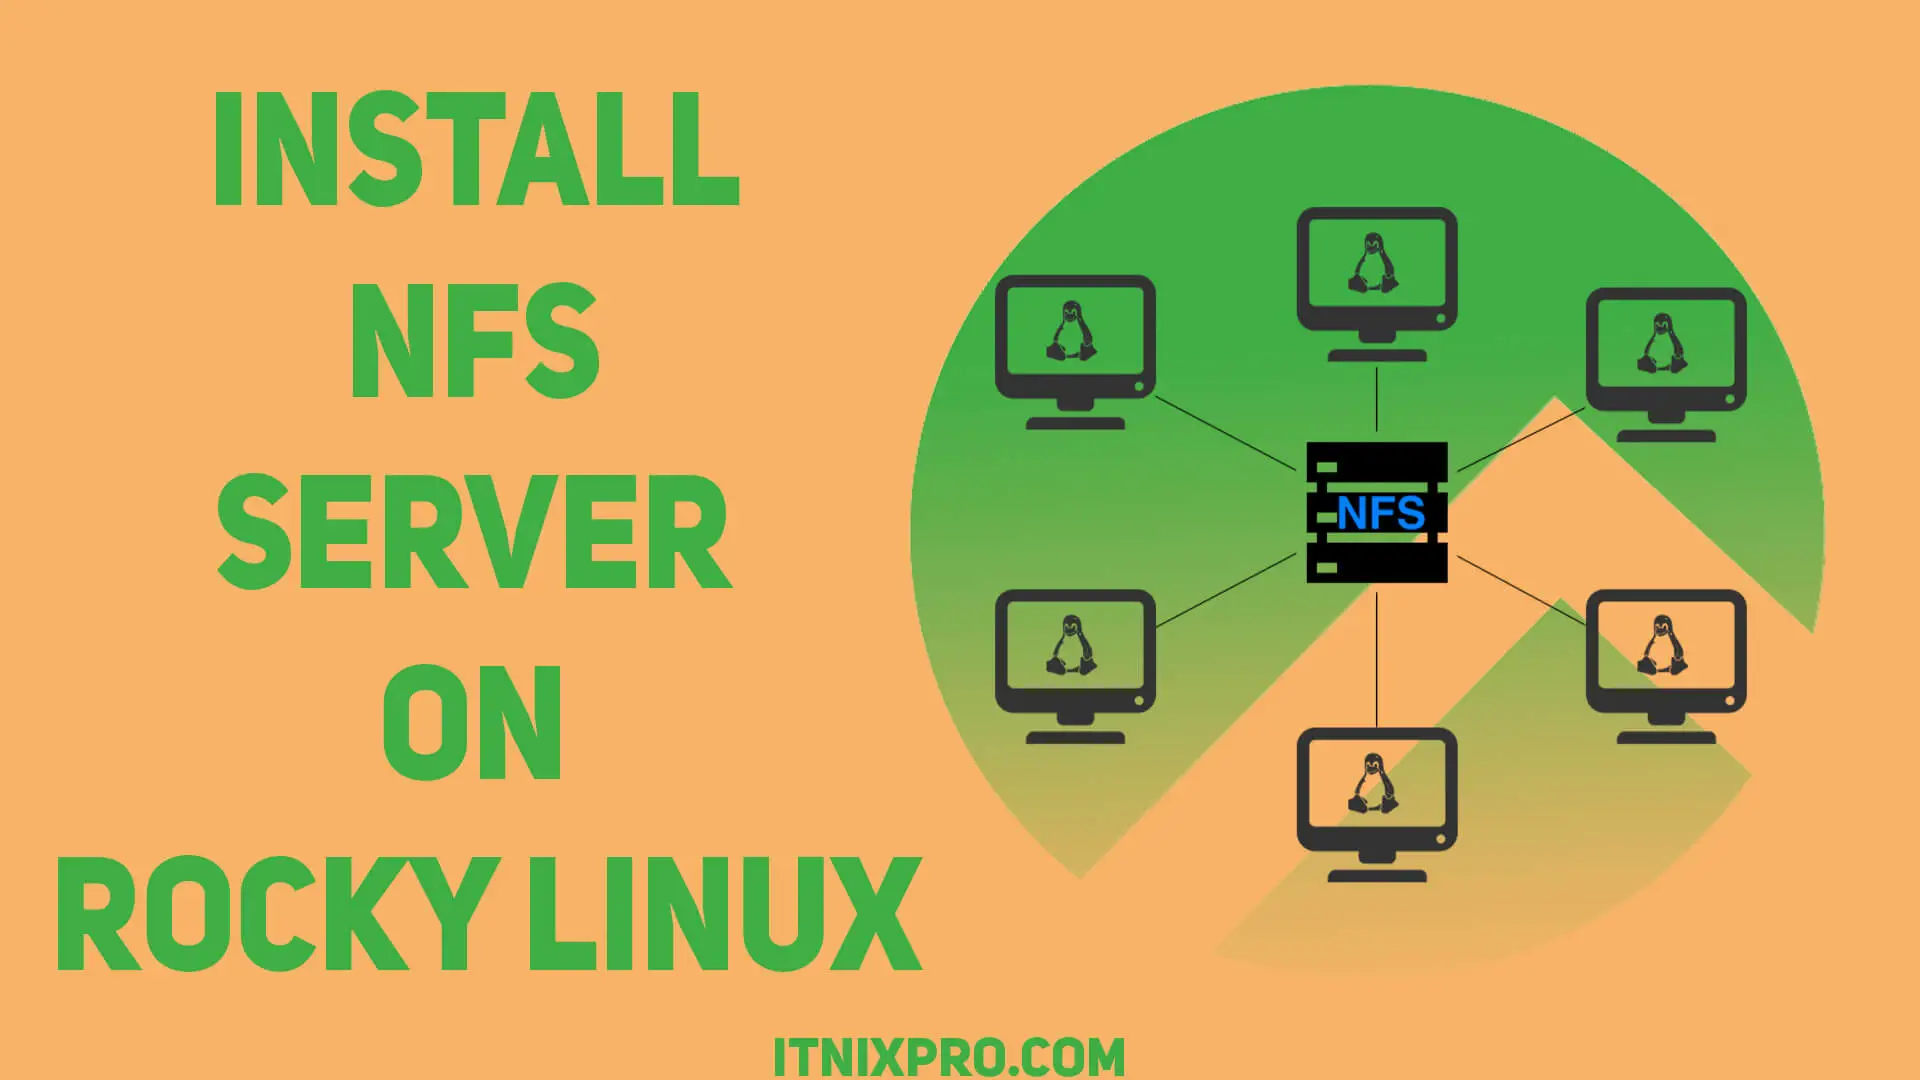 Install NFS Server on Rocky Linux